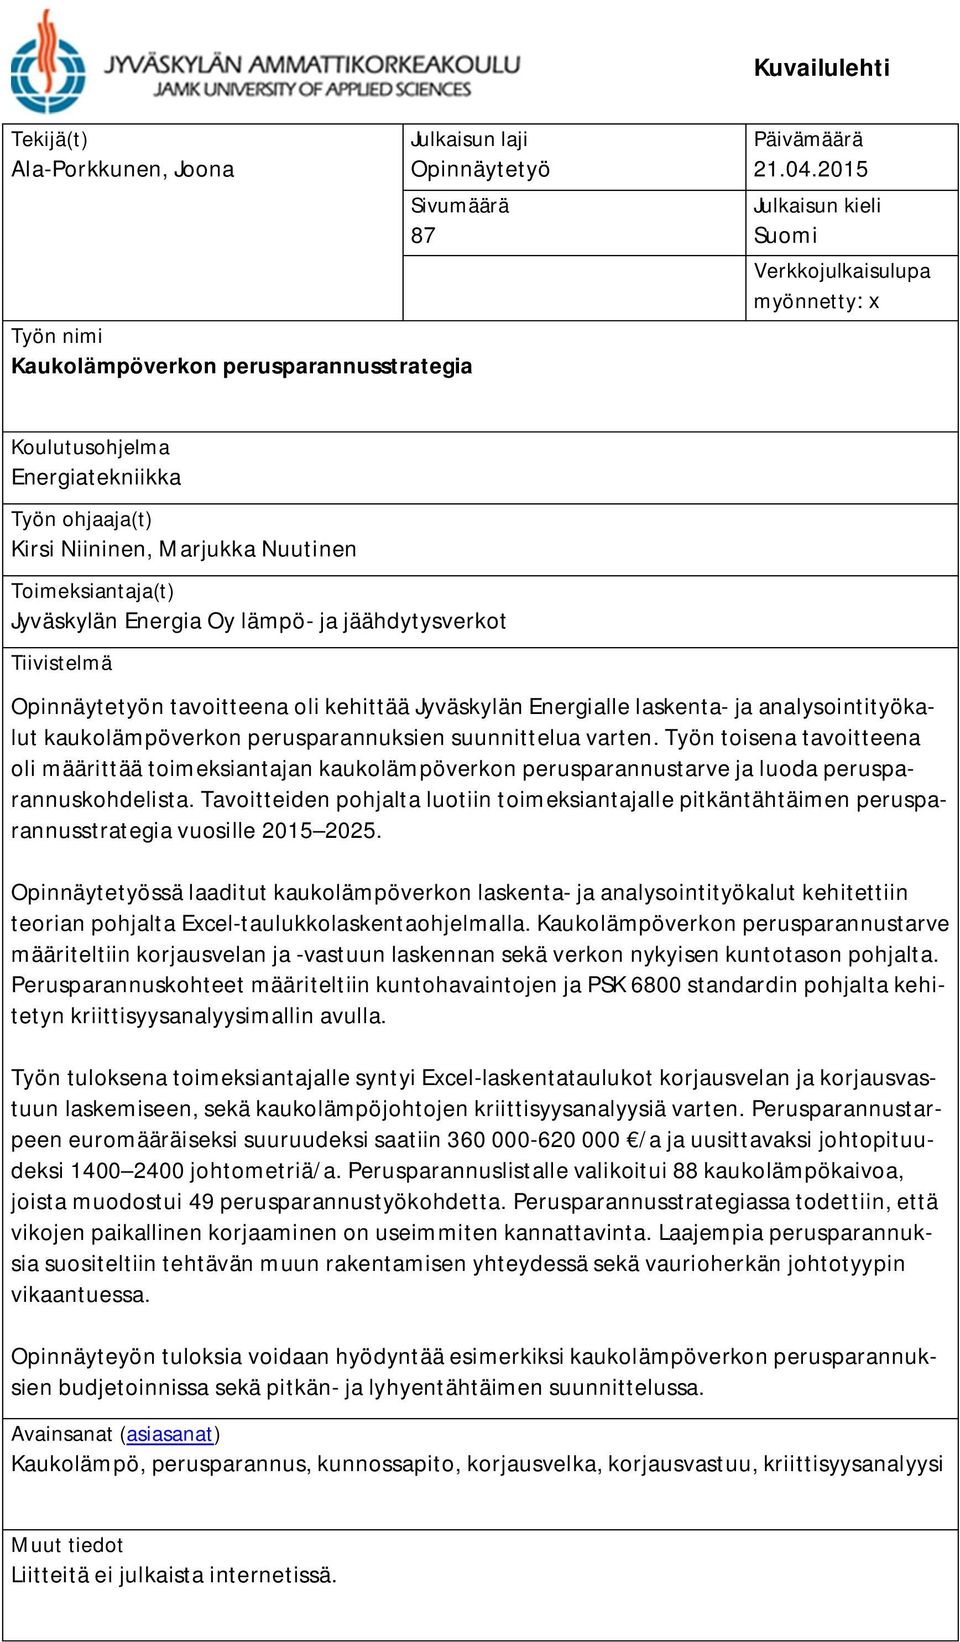 jäähdytysverkot Tiivistelmä Opinnäytetyön tavoitteena oli kehittää Jyväskylän Energialle laskenta- ja analysointityökalut kaukolämpöverkon perusparannuksien suunnittelua varten.